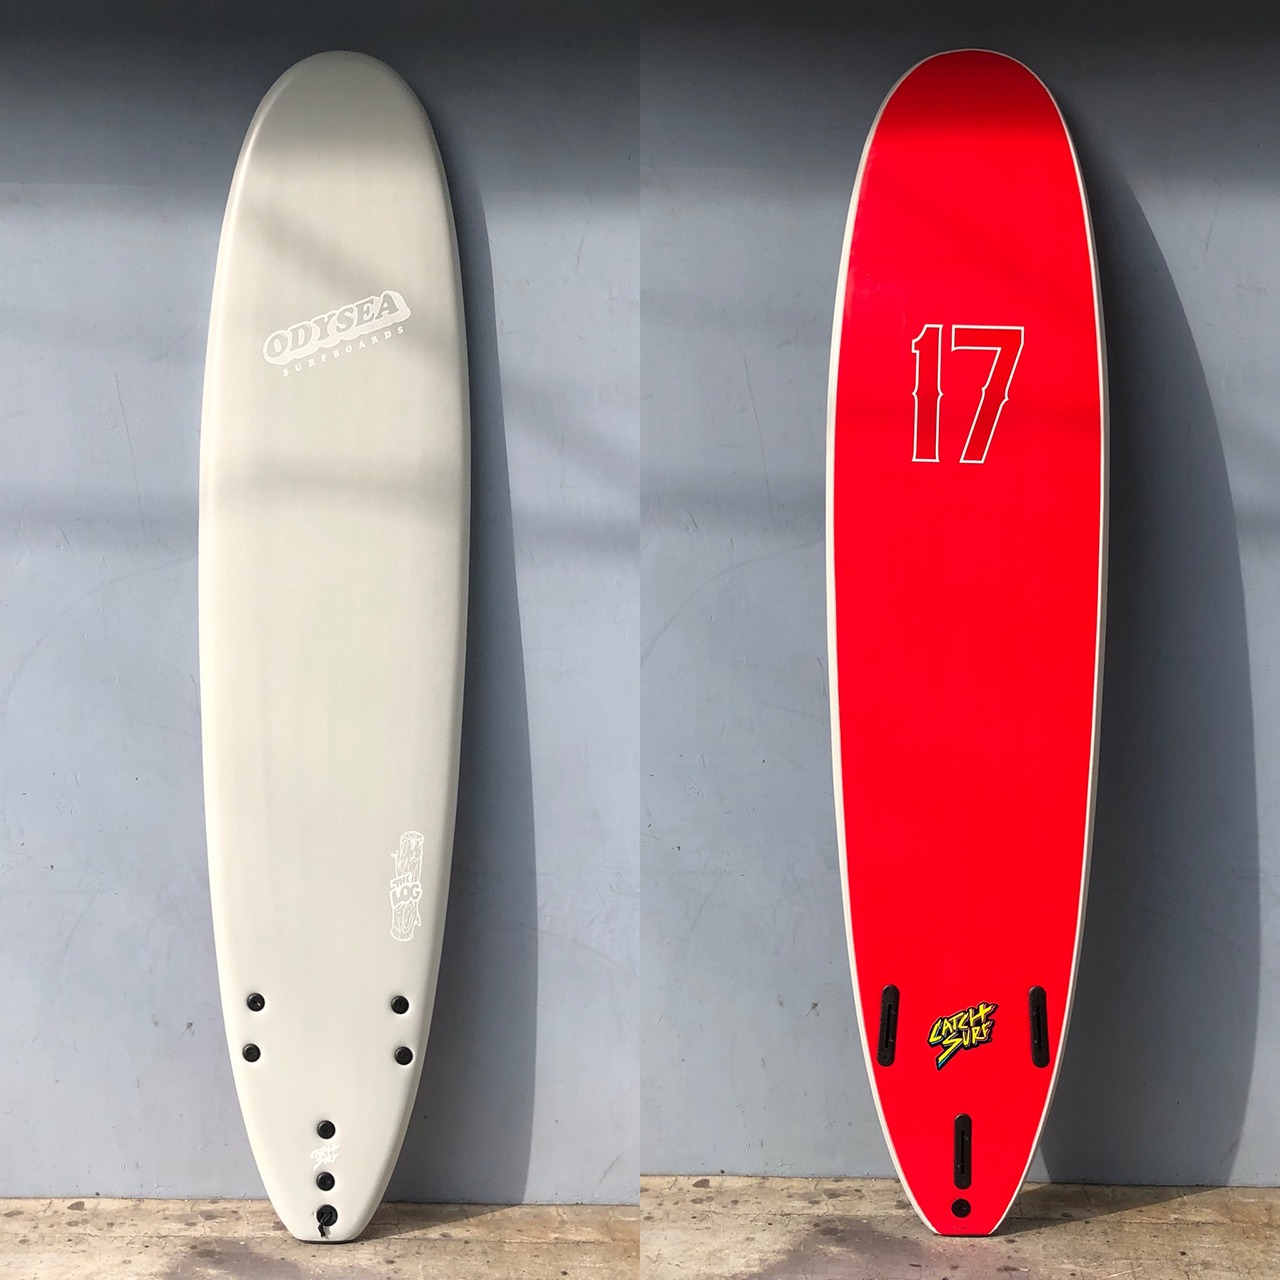 CATCH SURF キャッチサーフ / オディシーログ 8'0" 日本限定モデル Bone/ Red